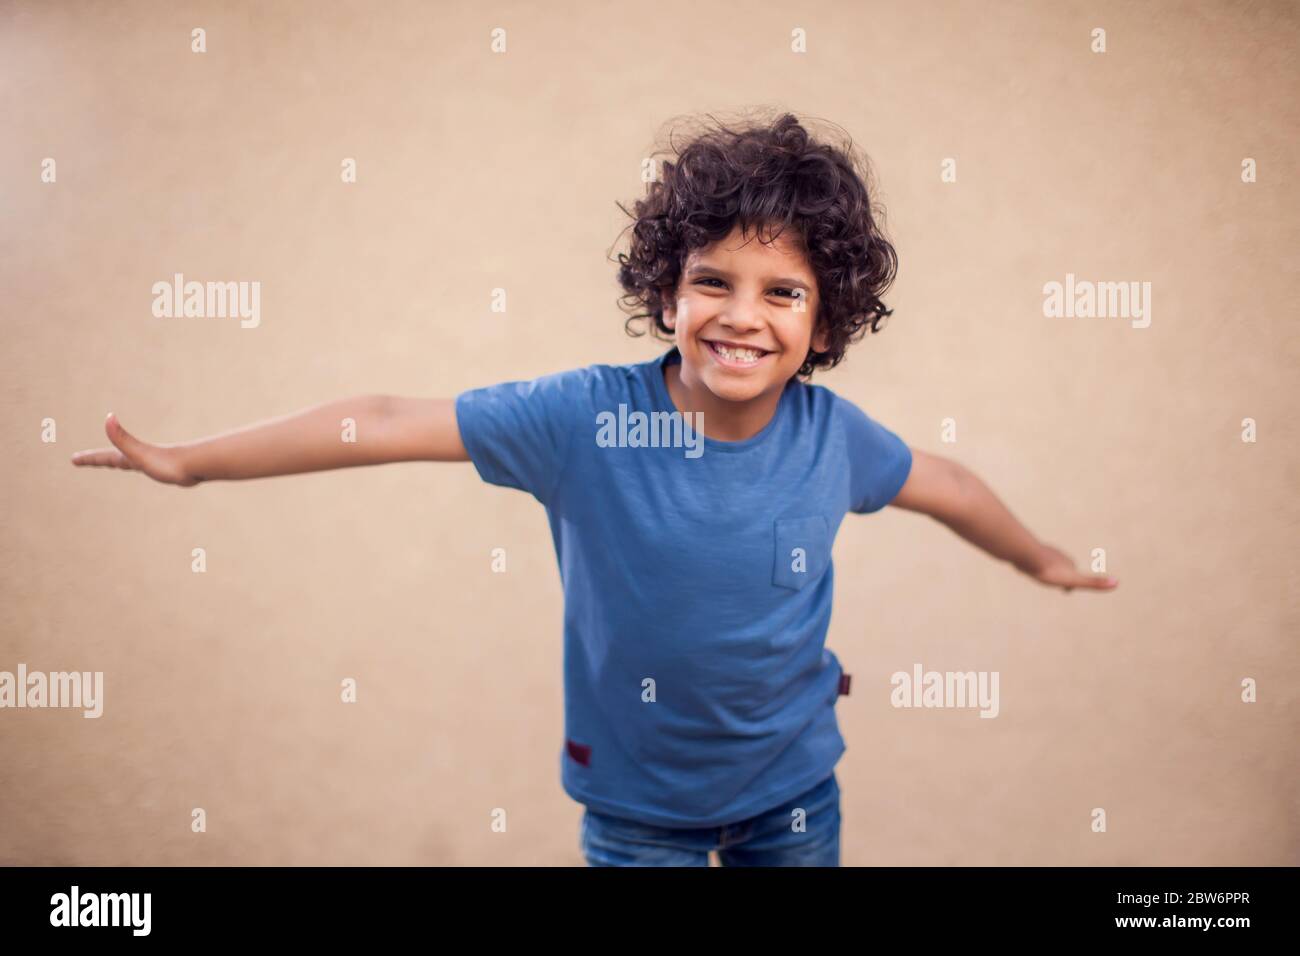 Un ritratto di ragazzo felice con capelli ricci. Bambini ed emozioni koncept Foto Stock